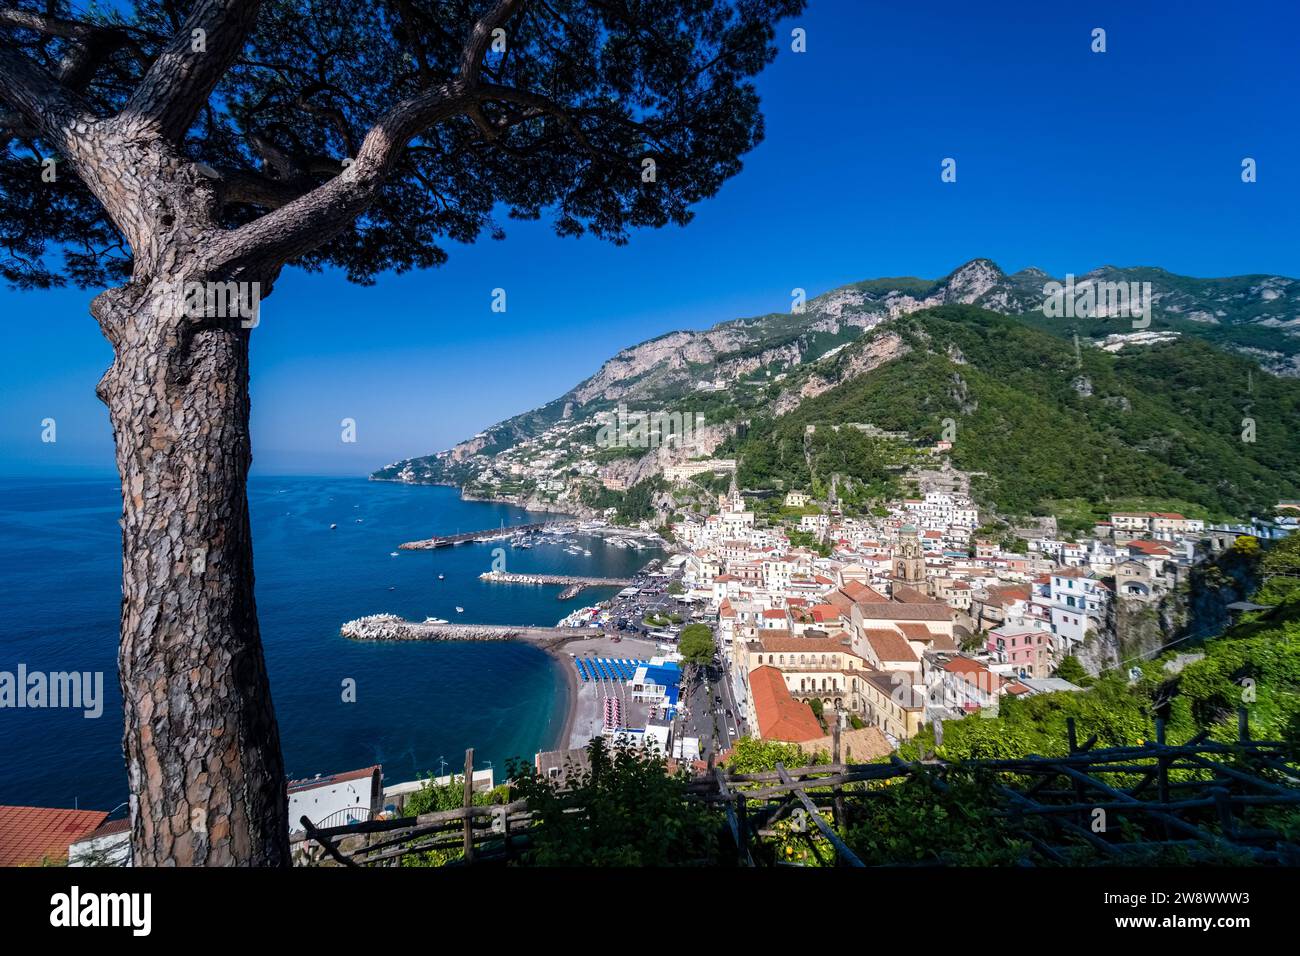 Aus der Vogelperspektive auf die Stadt Amalfi an der Amalfiküste, die an der Küste in einem Tal liegt, das zum Mittelmeer führt. Stockfoto